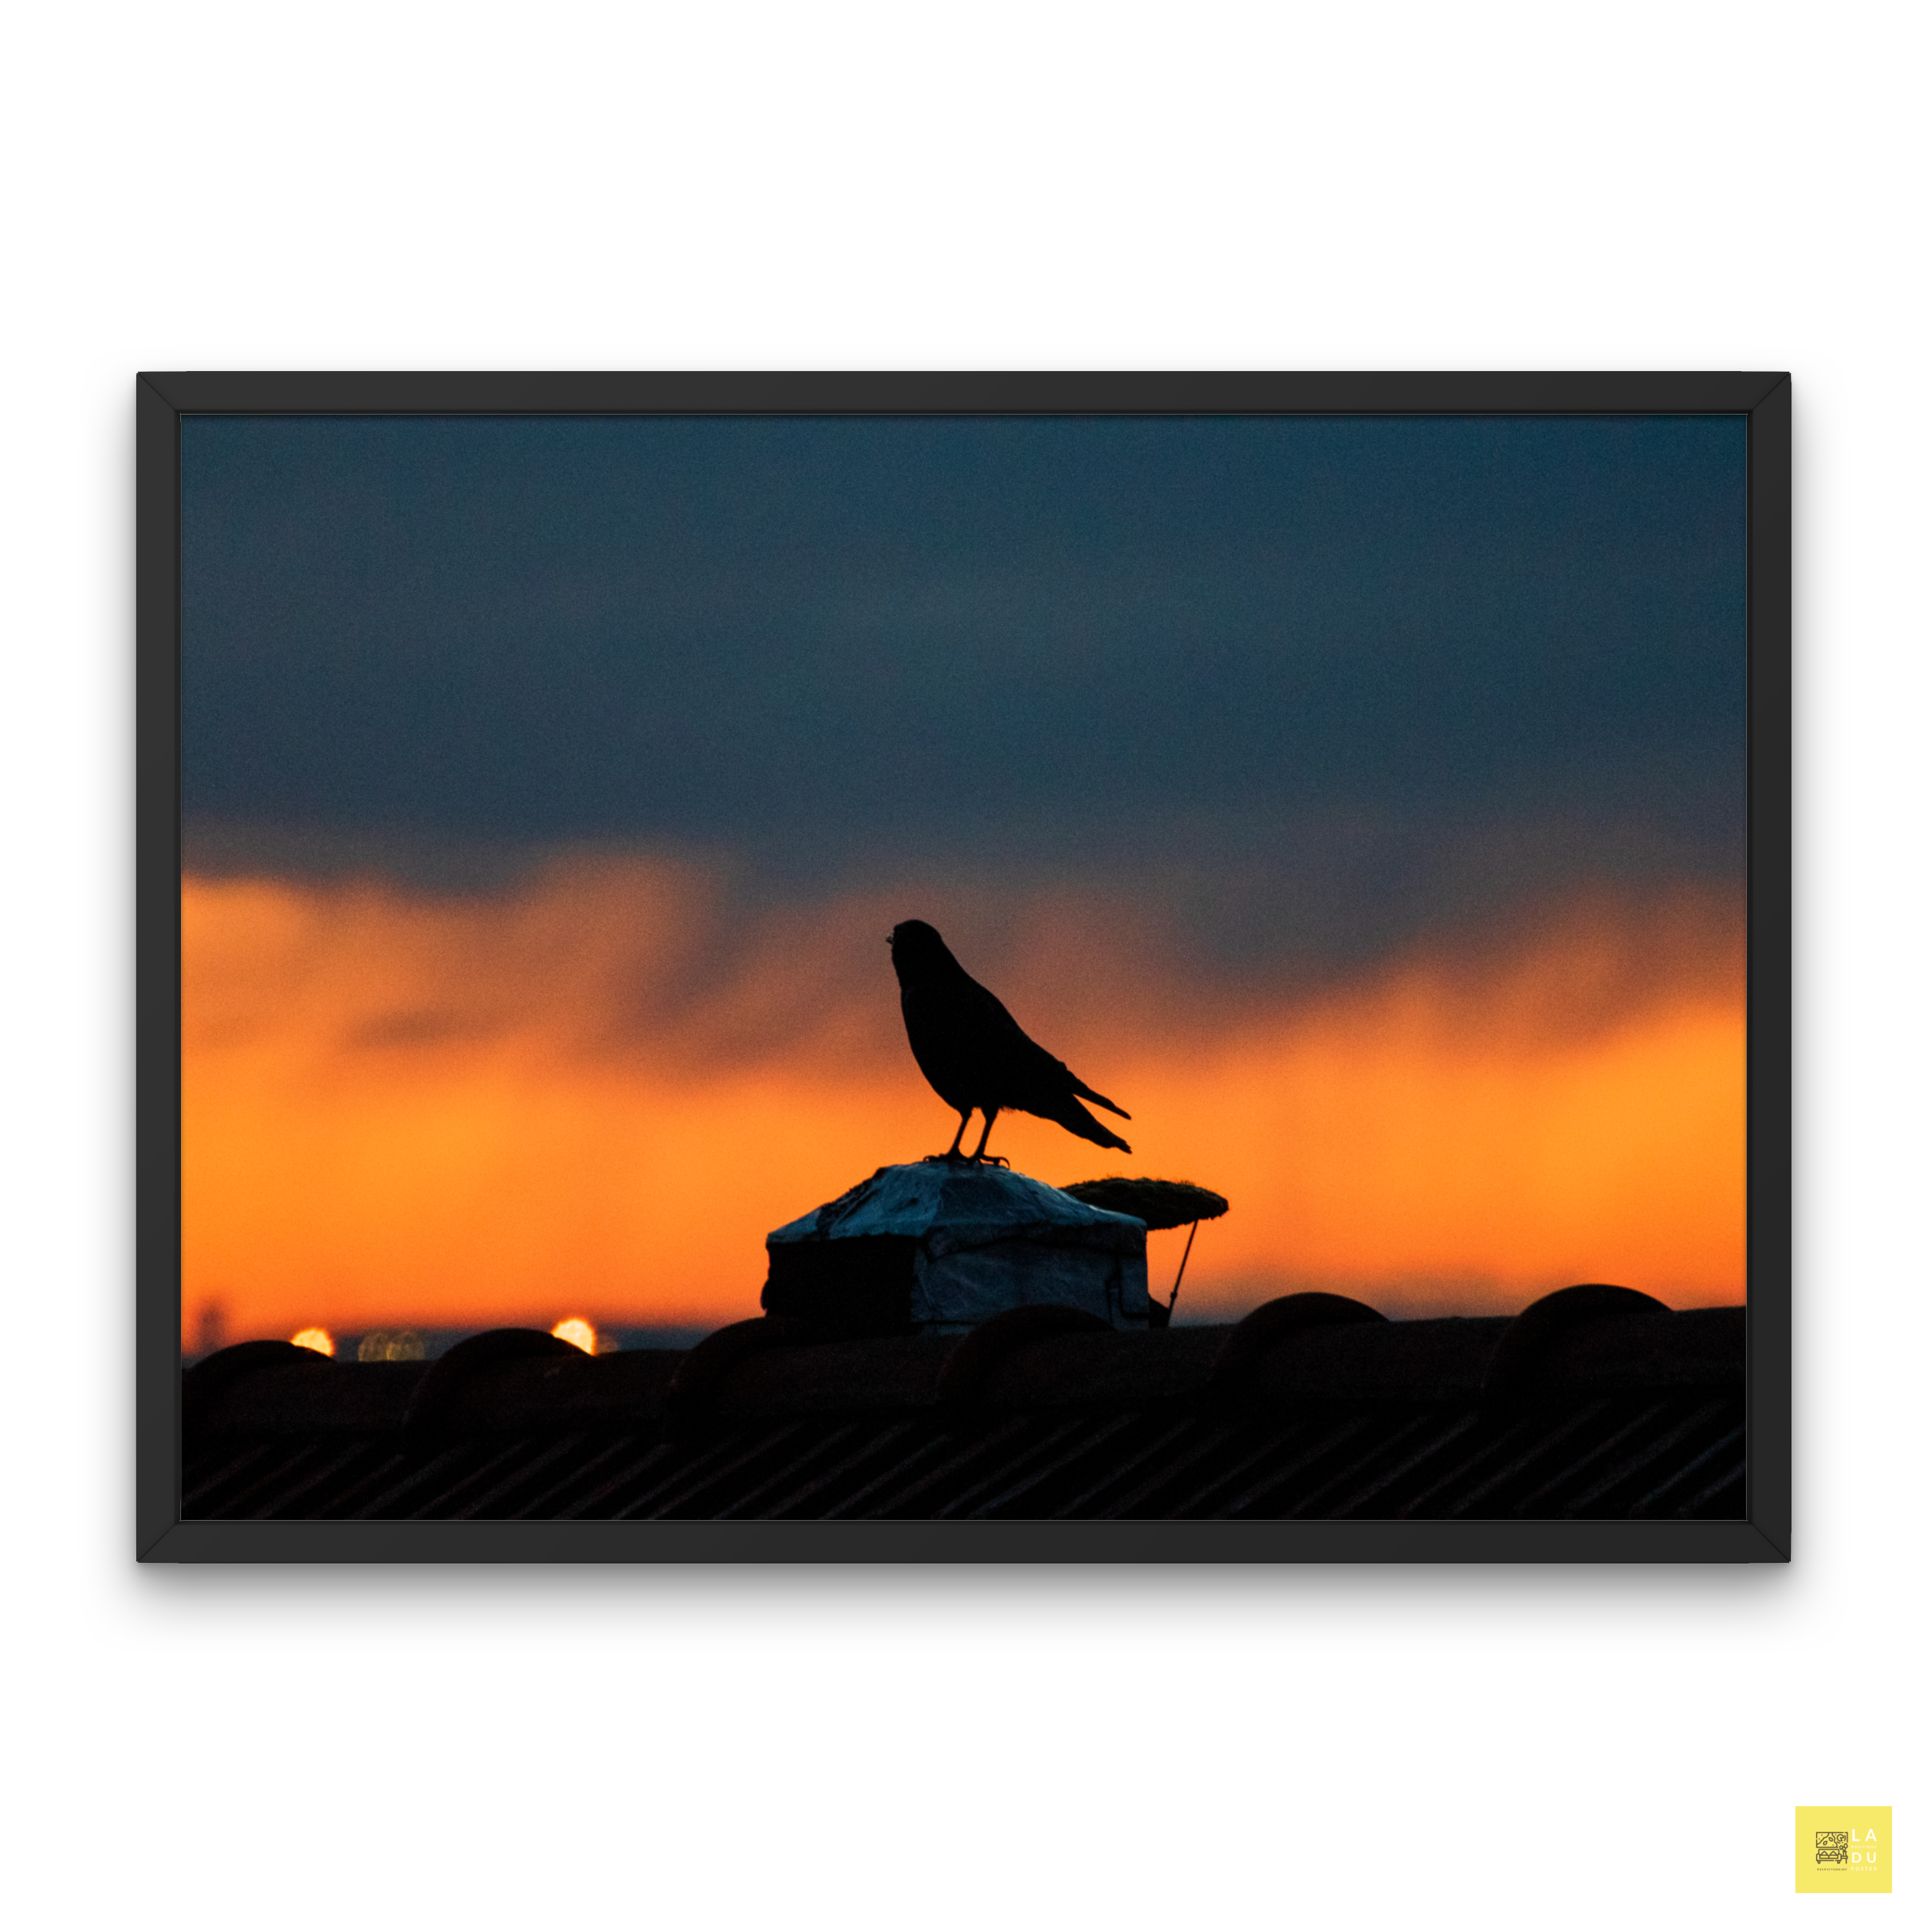 Le corbeau au coucher du soleil - Découvrez nos éditions uniques de tirages limités signées par Yann Peccard, offrant des photographies d'art exclusives et rares pour les collectionneurs et amateurs d'art.